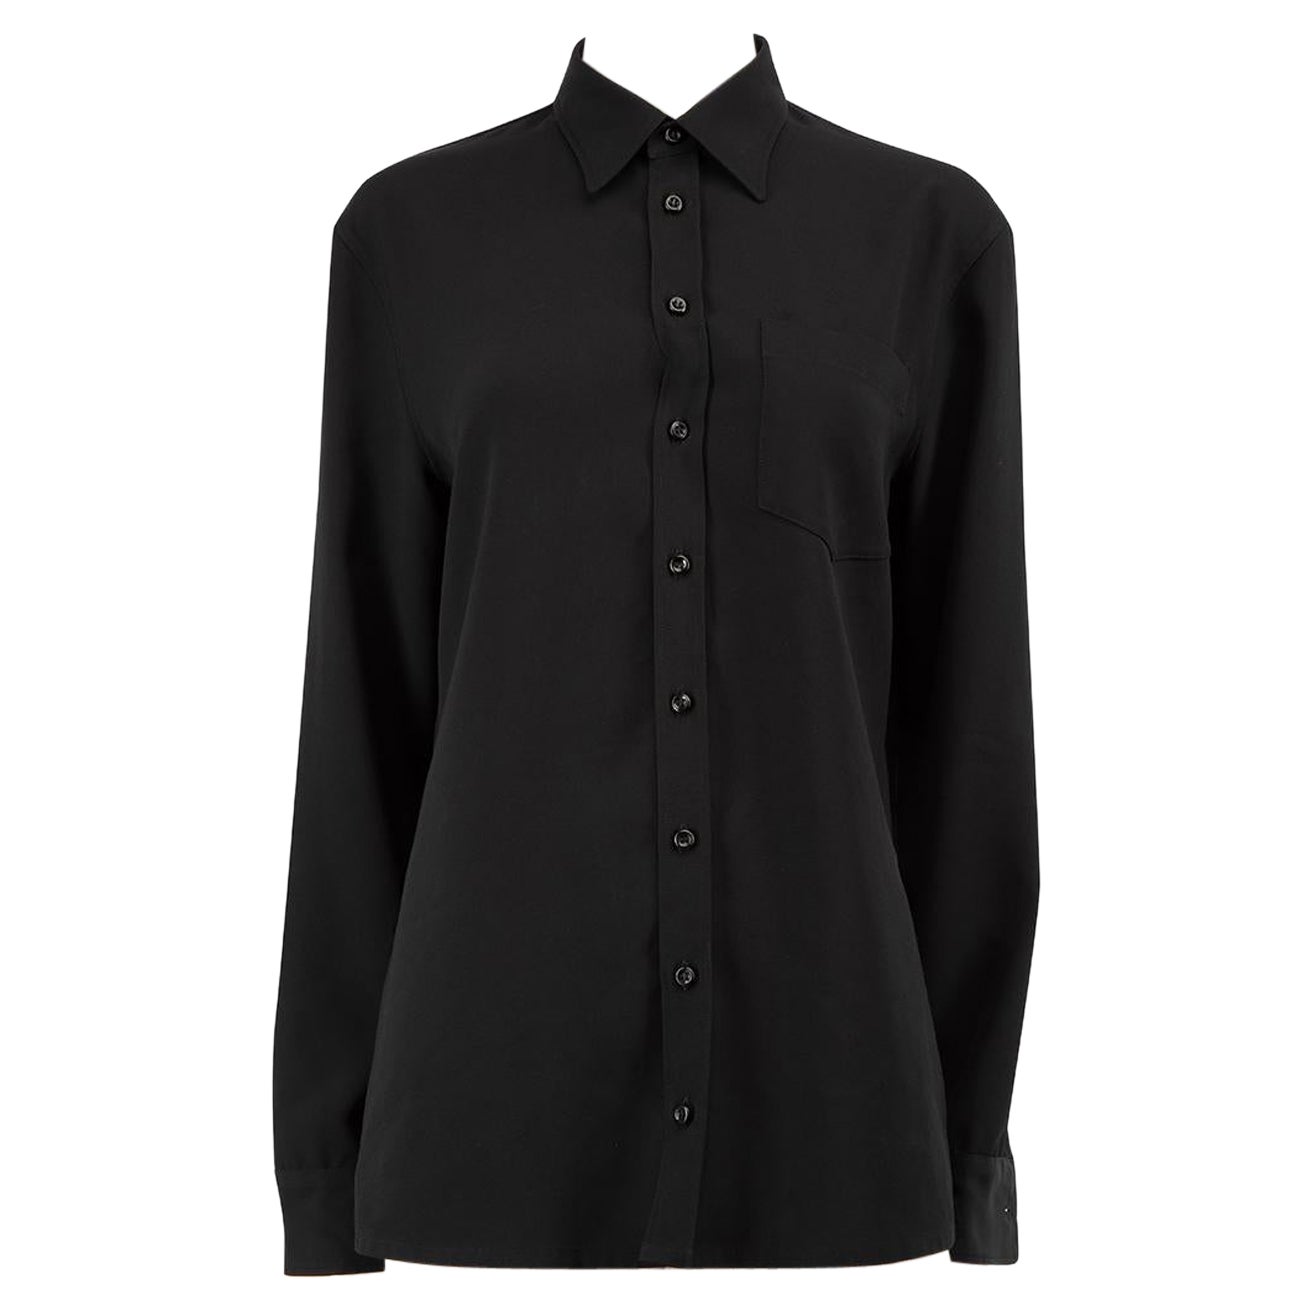 Maison Margiela Black Strap Detail Buttoned Shirt Size S For Sale